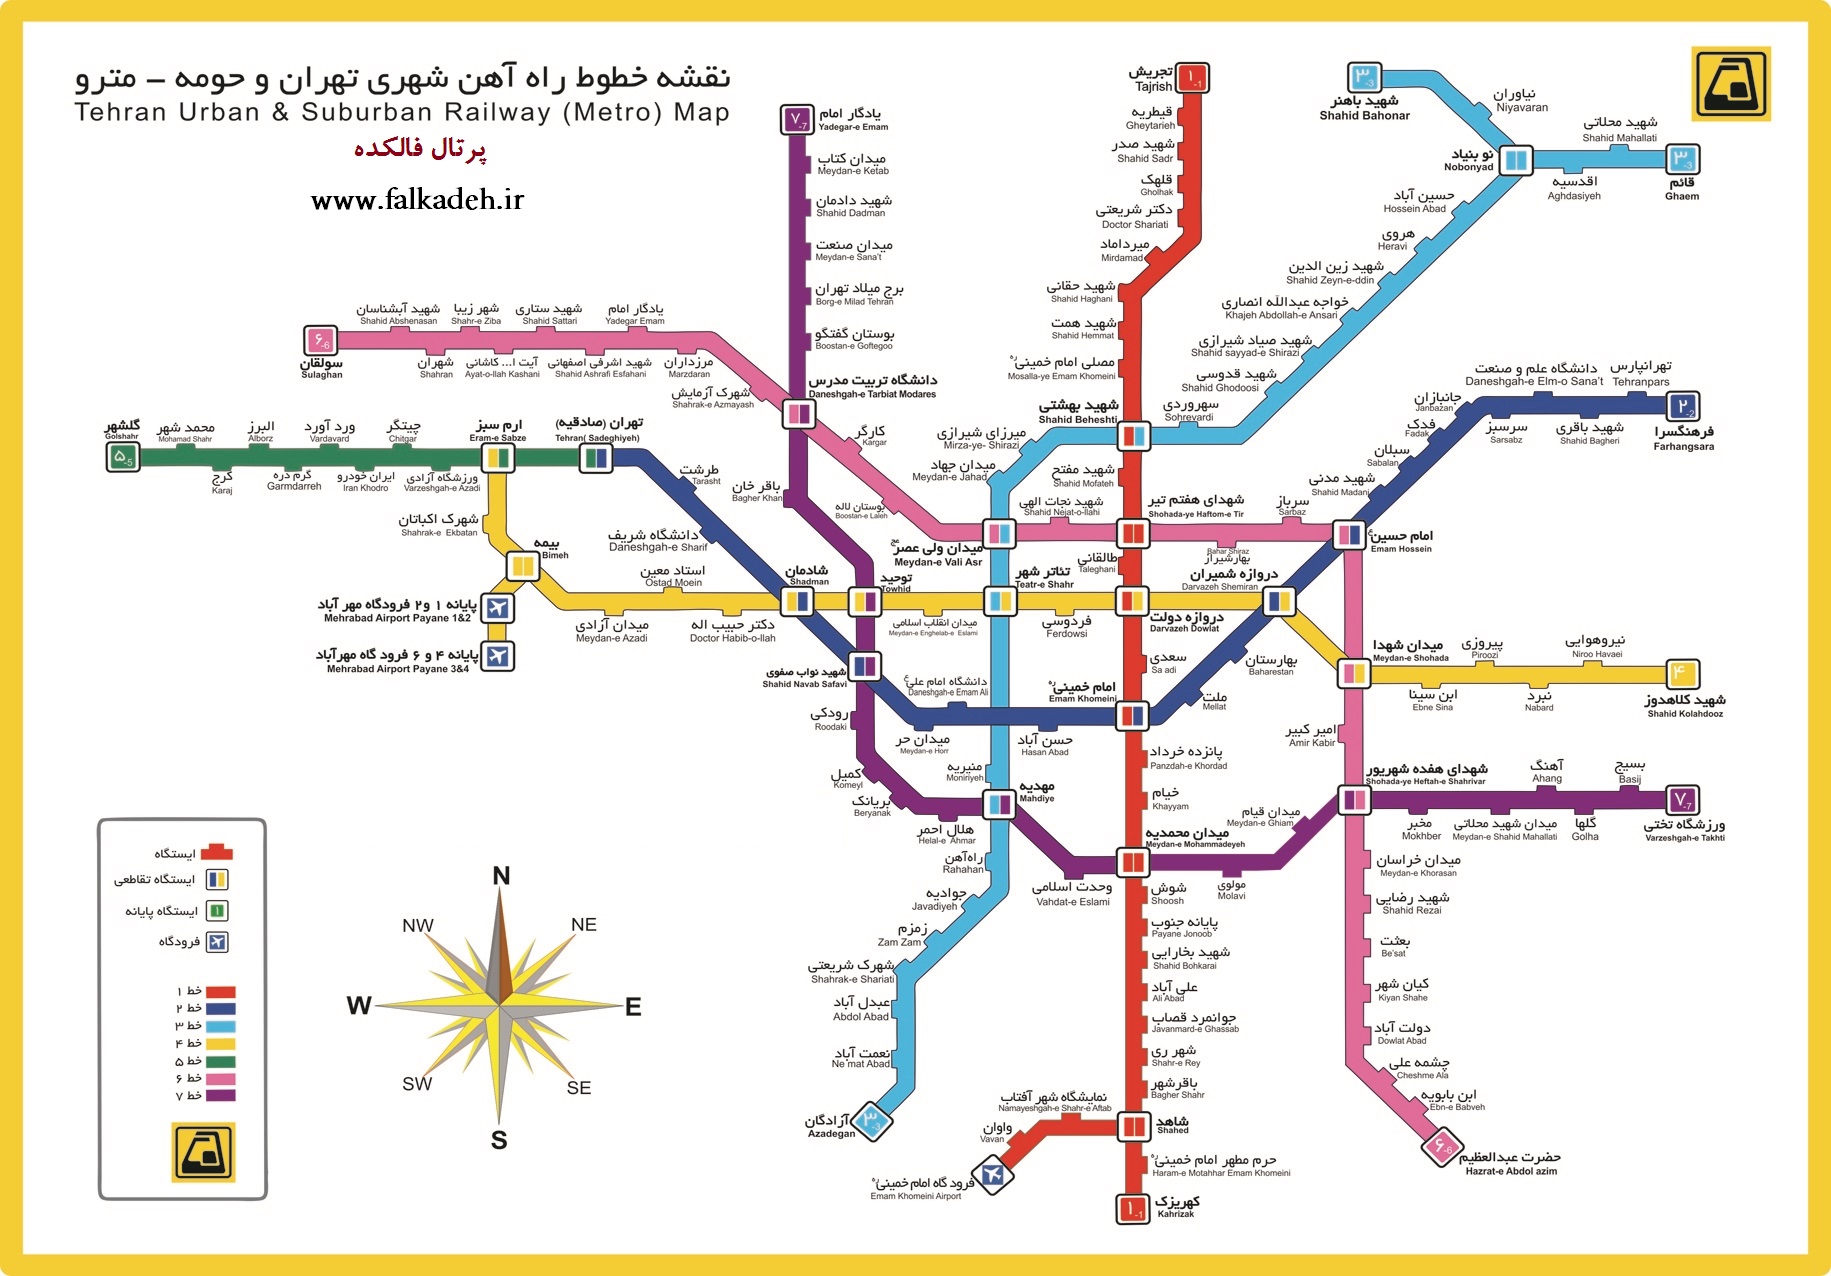 دانلود نقشه خطوط متروی تهران سال 96 با کیفیت بالا